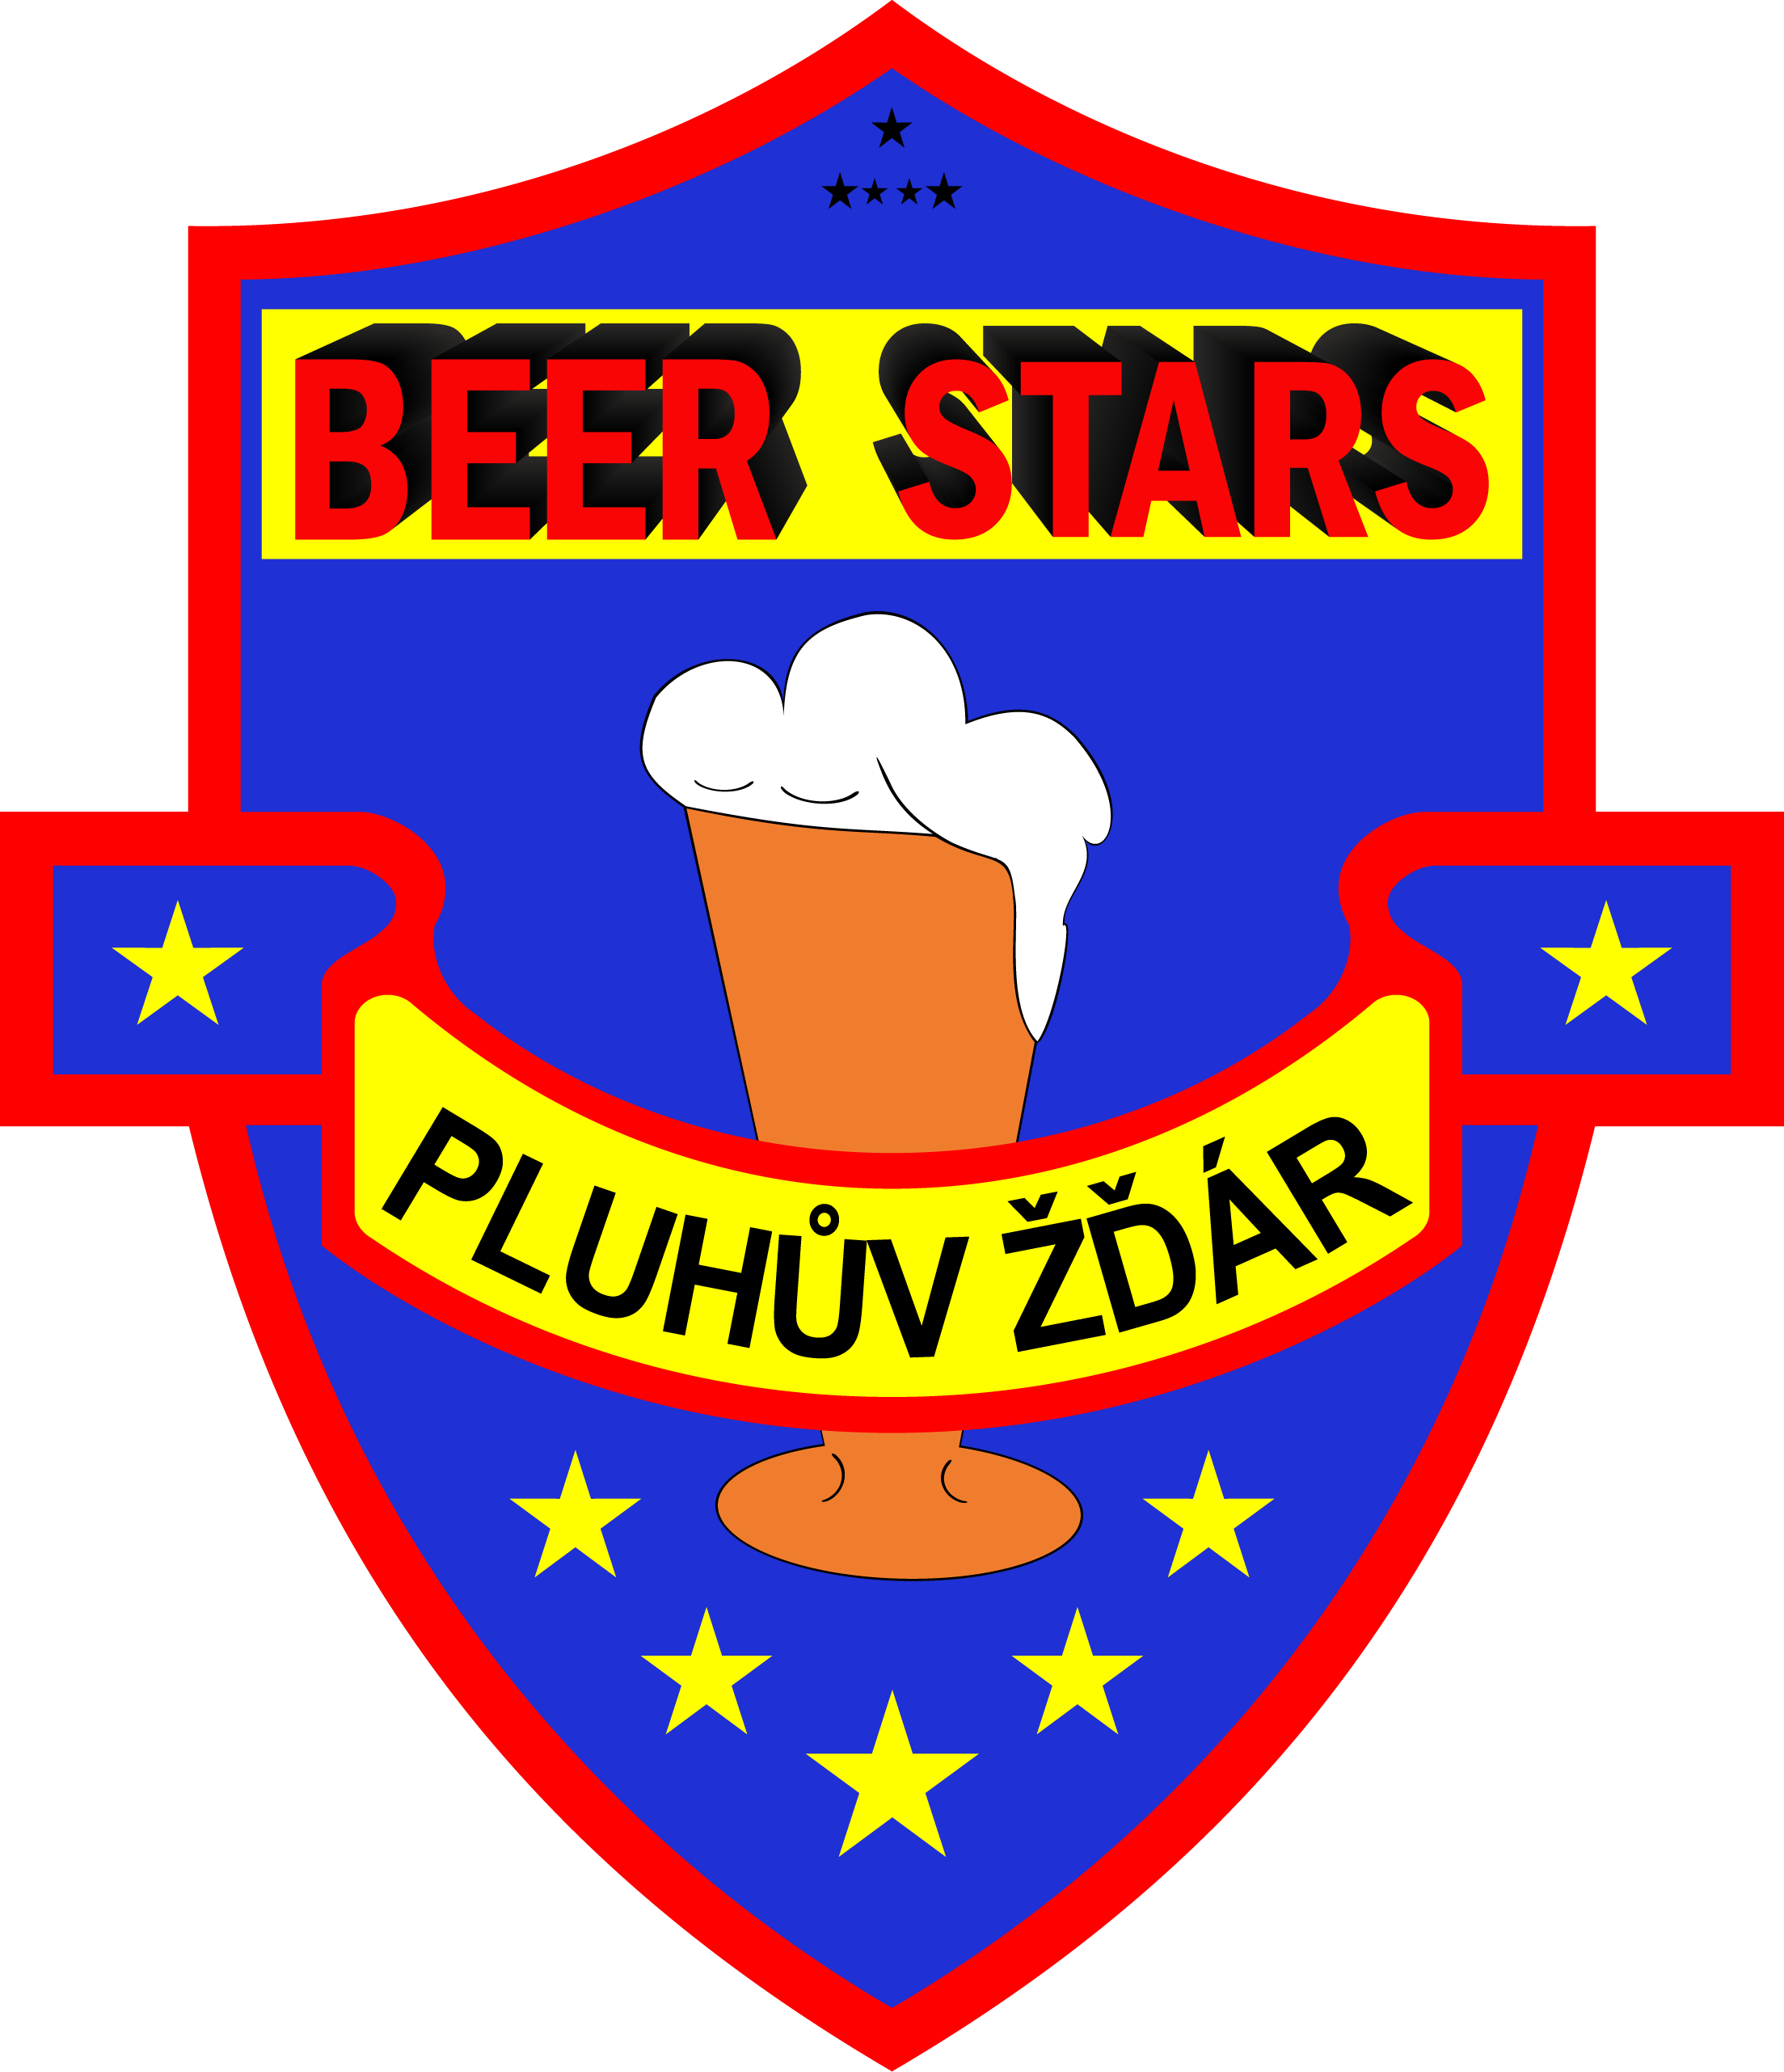 SK Beer Stars Pluhv r